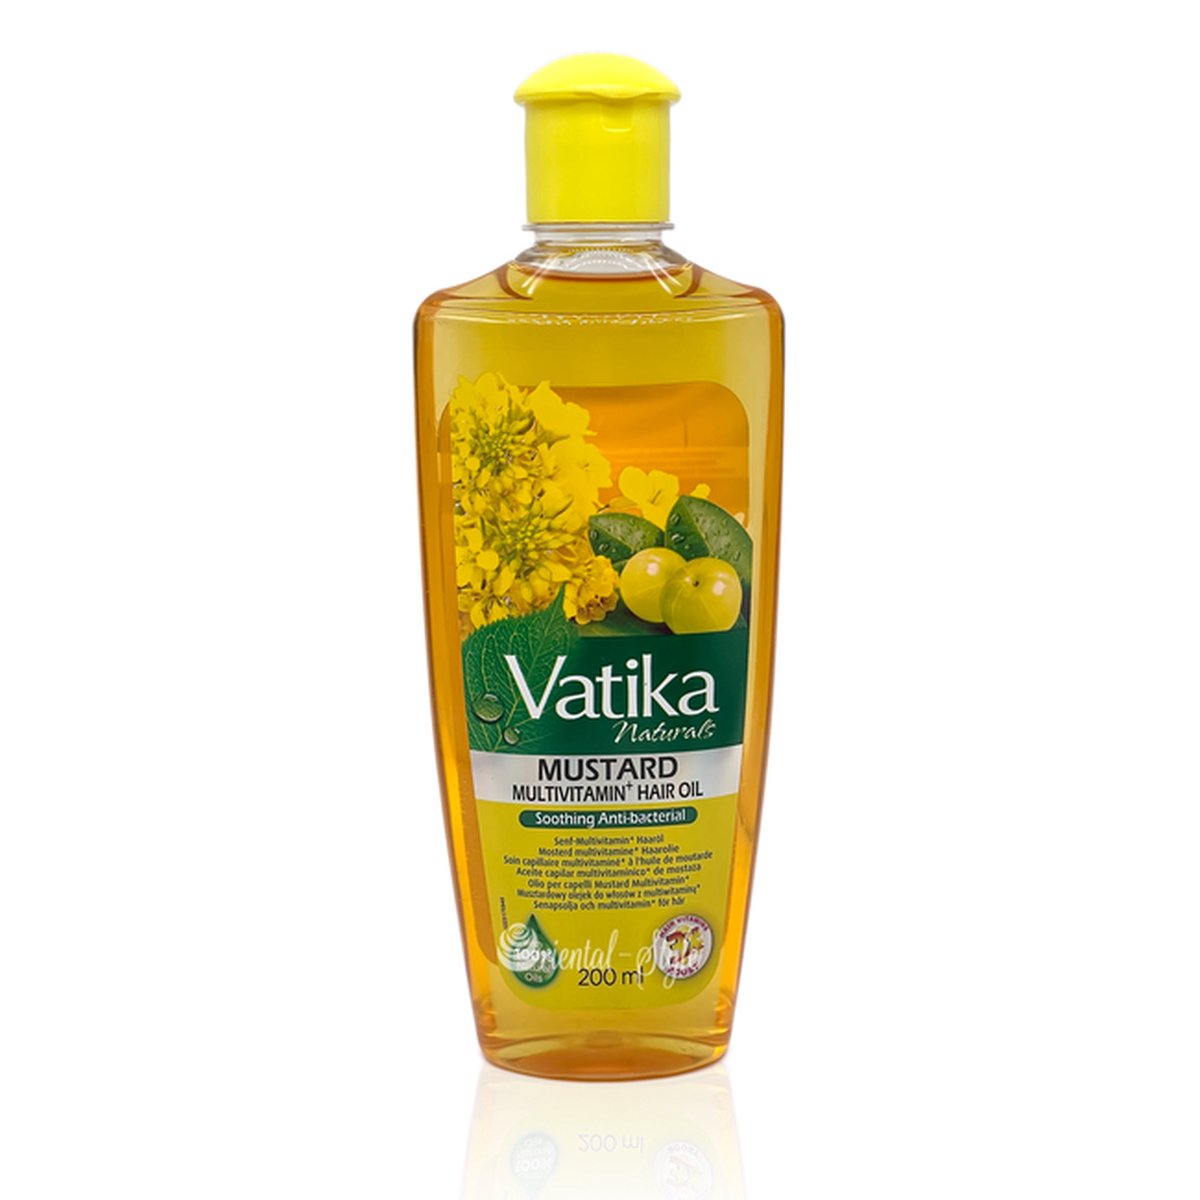 Vatika Naturals Mustard Multivitamin Hair Oil 200ml